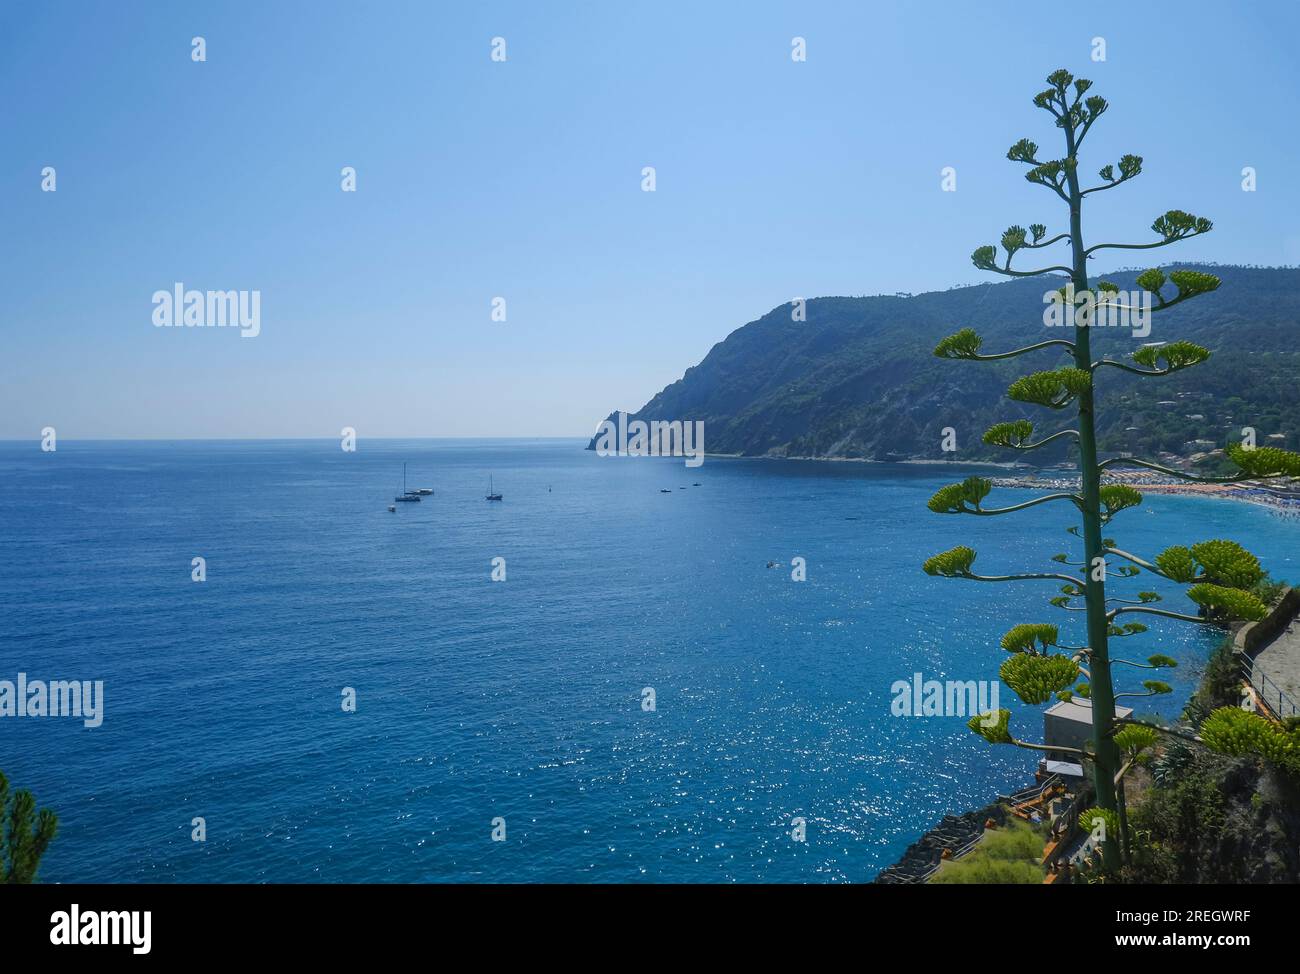 Luftaufnahme des ligurischen Meeres mit Booten, Yachten und Klippen in Monterosso Al Mare, Ligurien, Italien Stockfoto